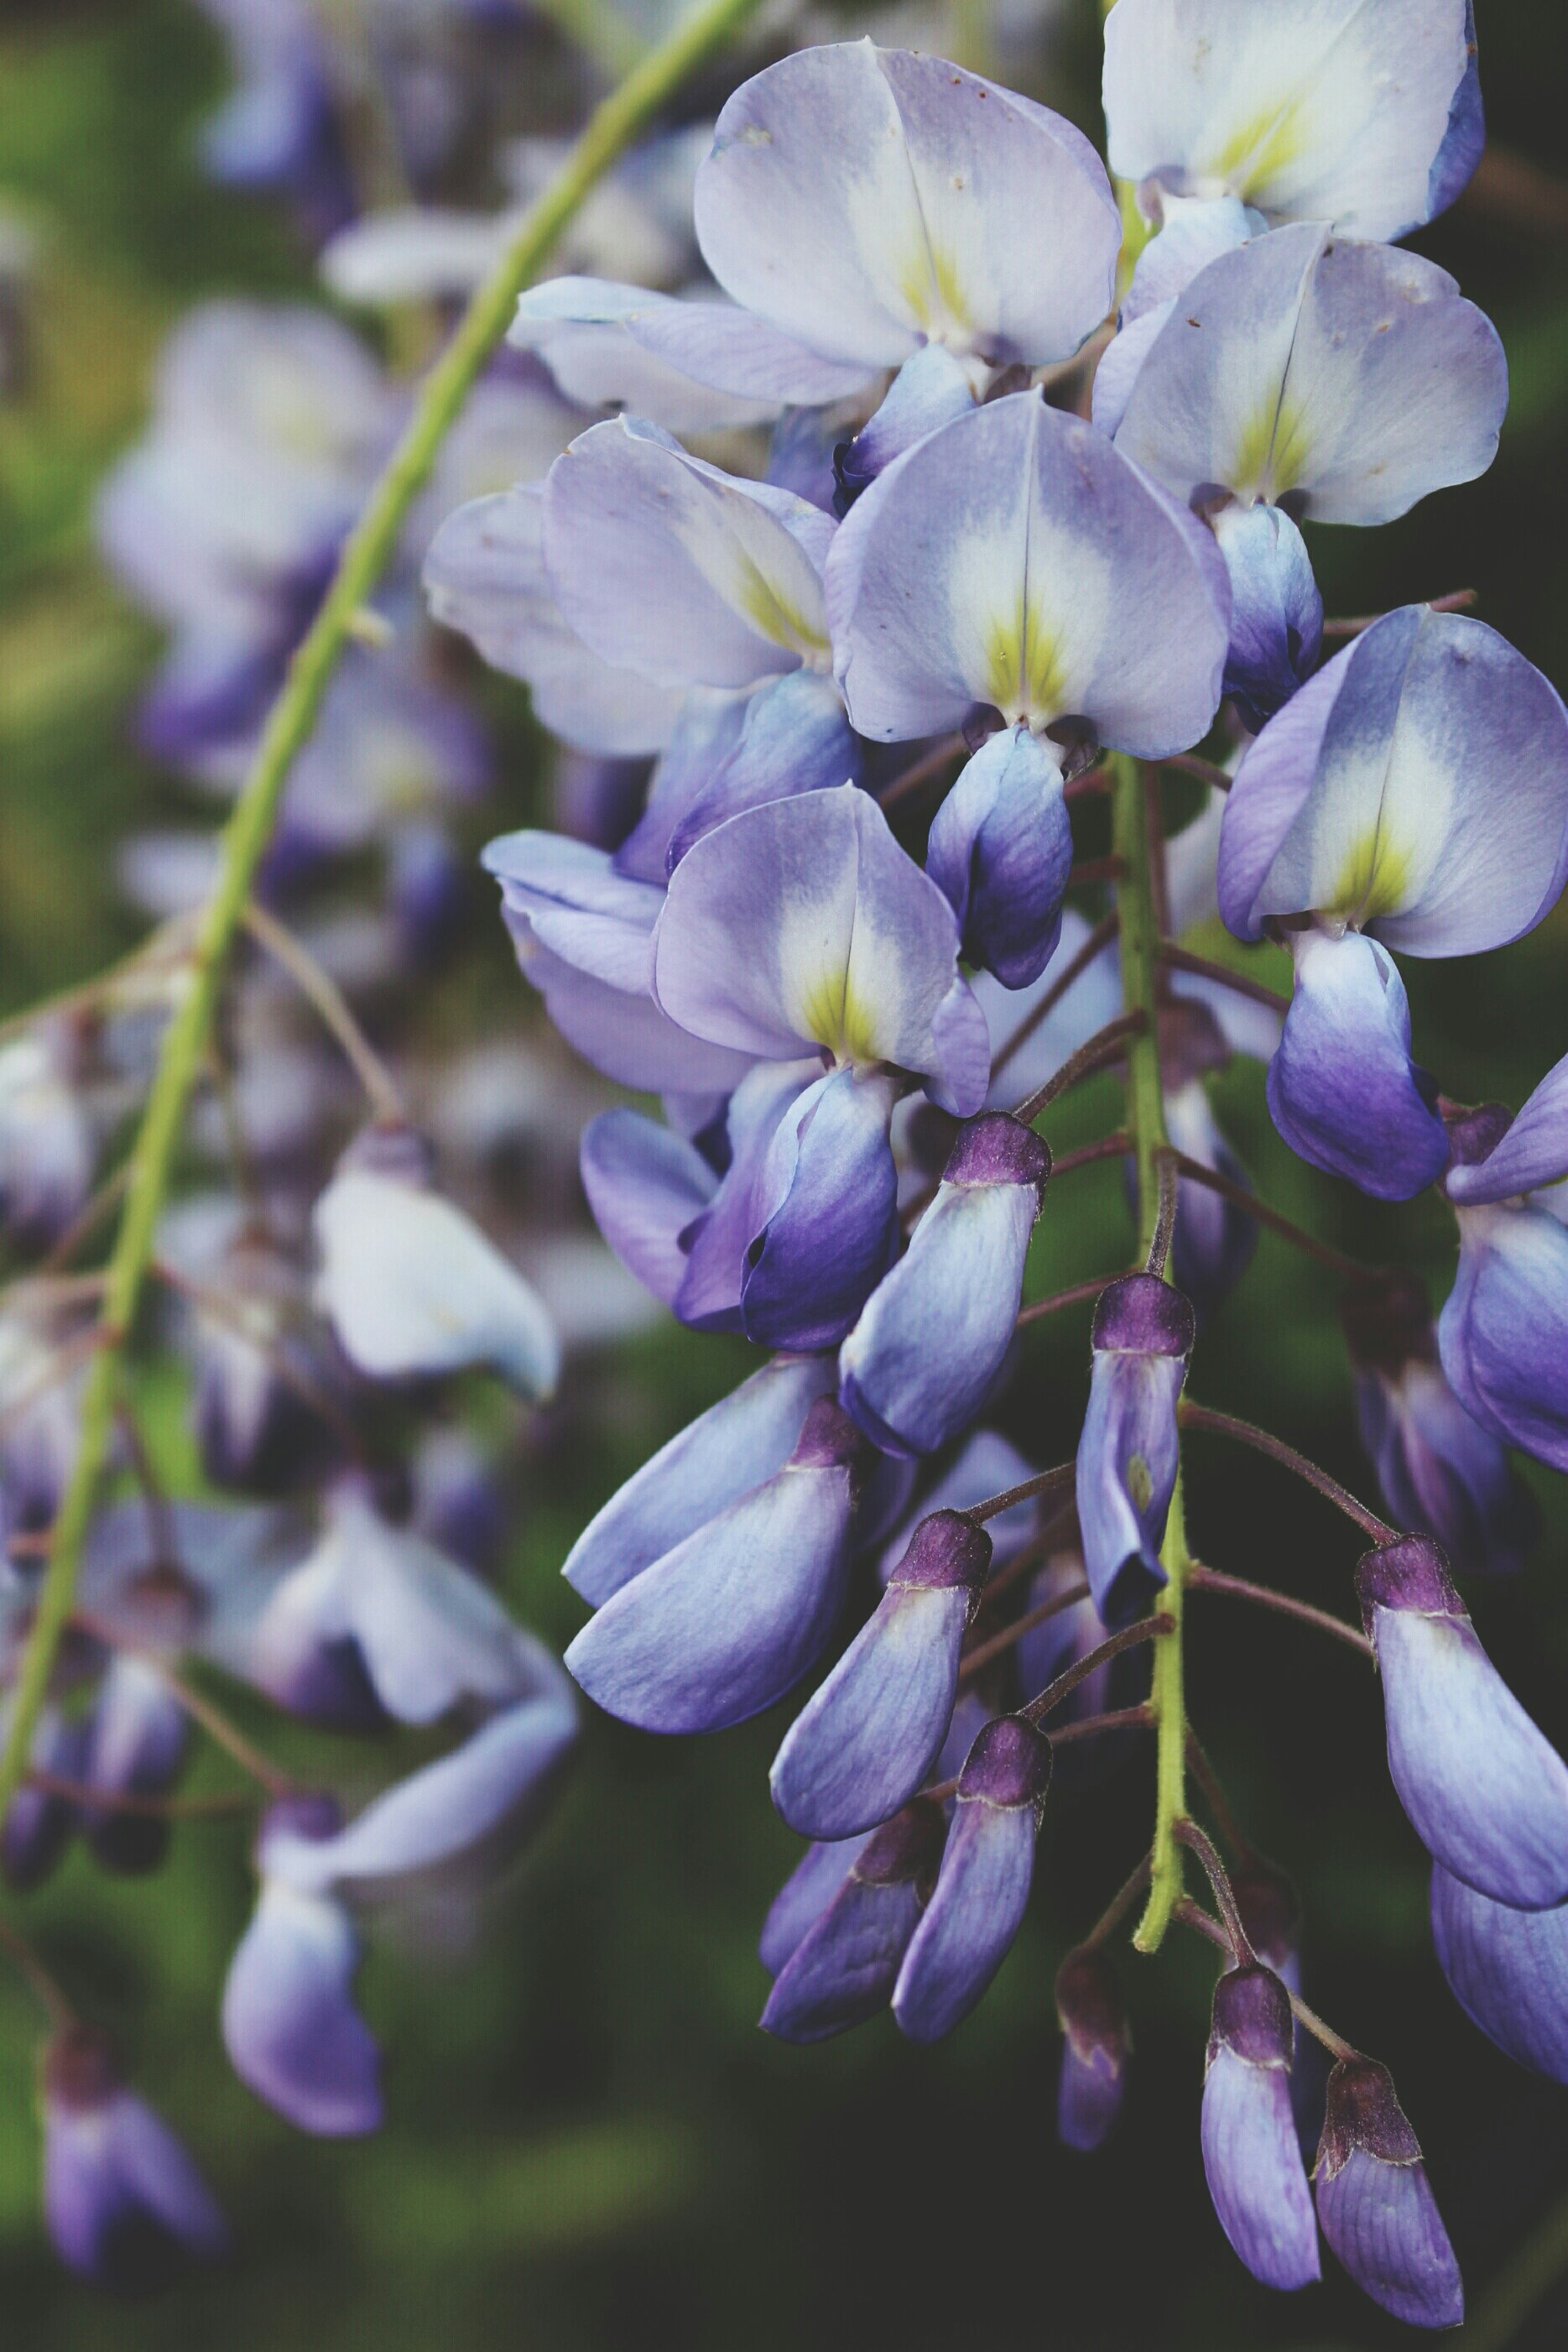 Violet Flower Pictures Download Free Images On Unsplash